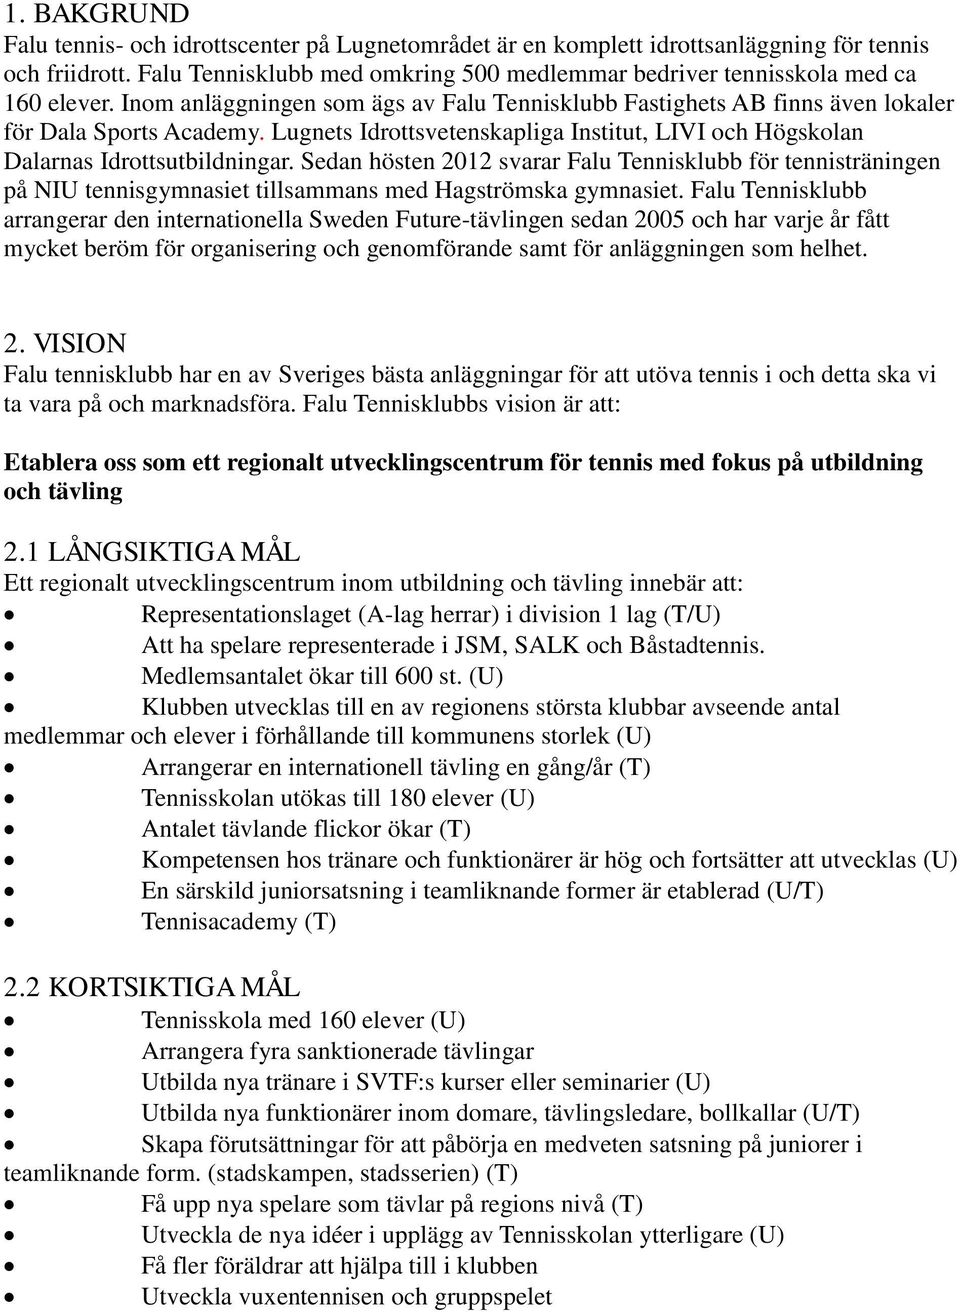 Lugnets Idrottsvetenskapliga Institut, LIVI och Högskolan Dalarnas Idrottsutbildningar.